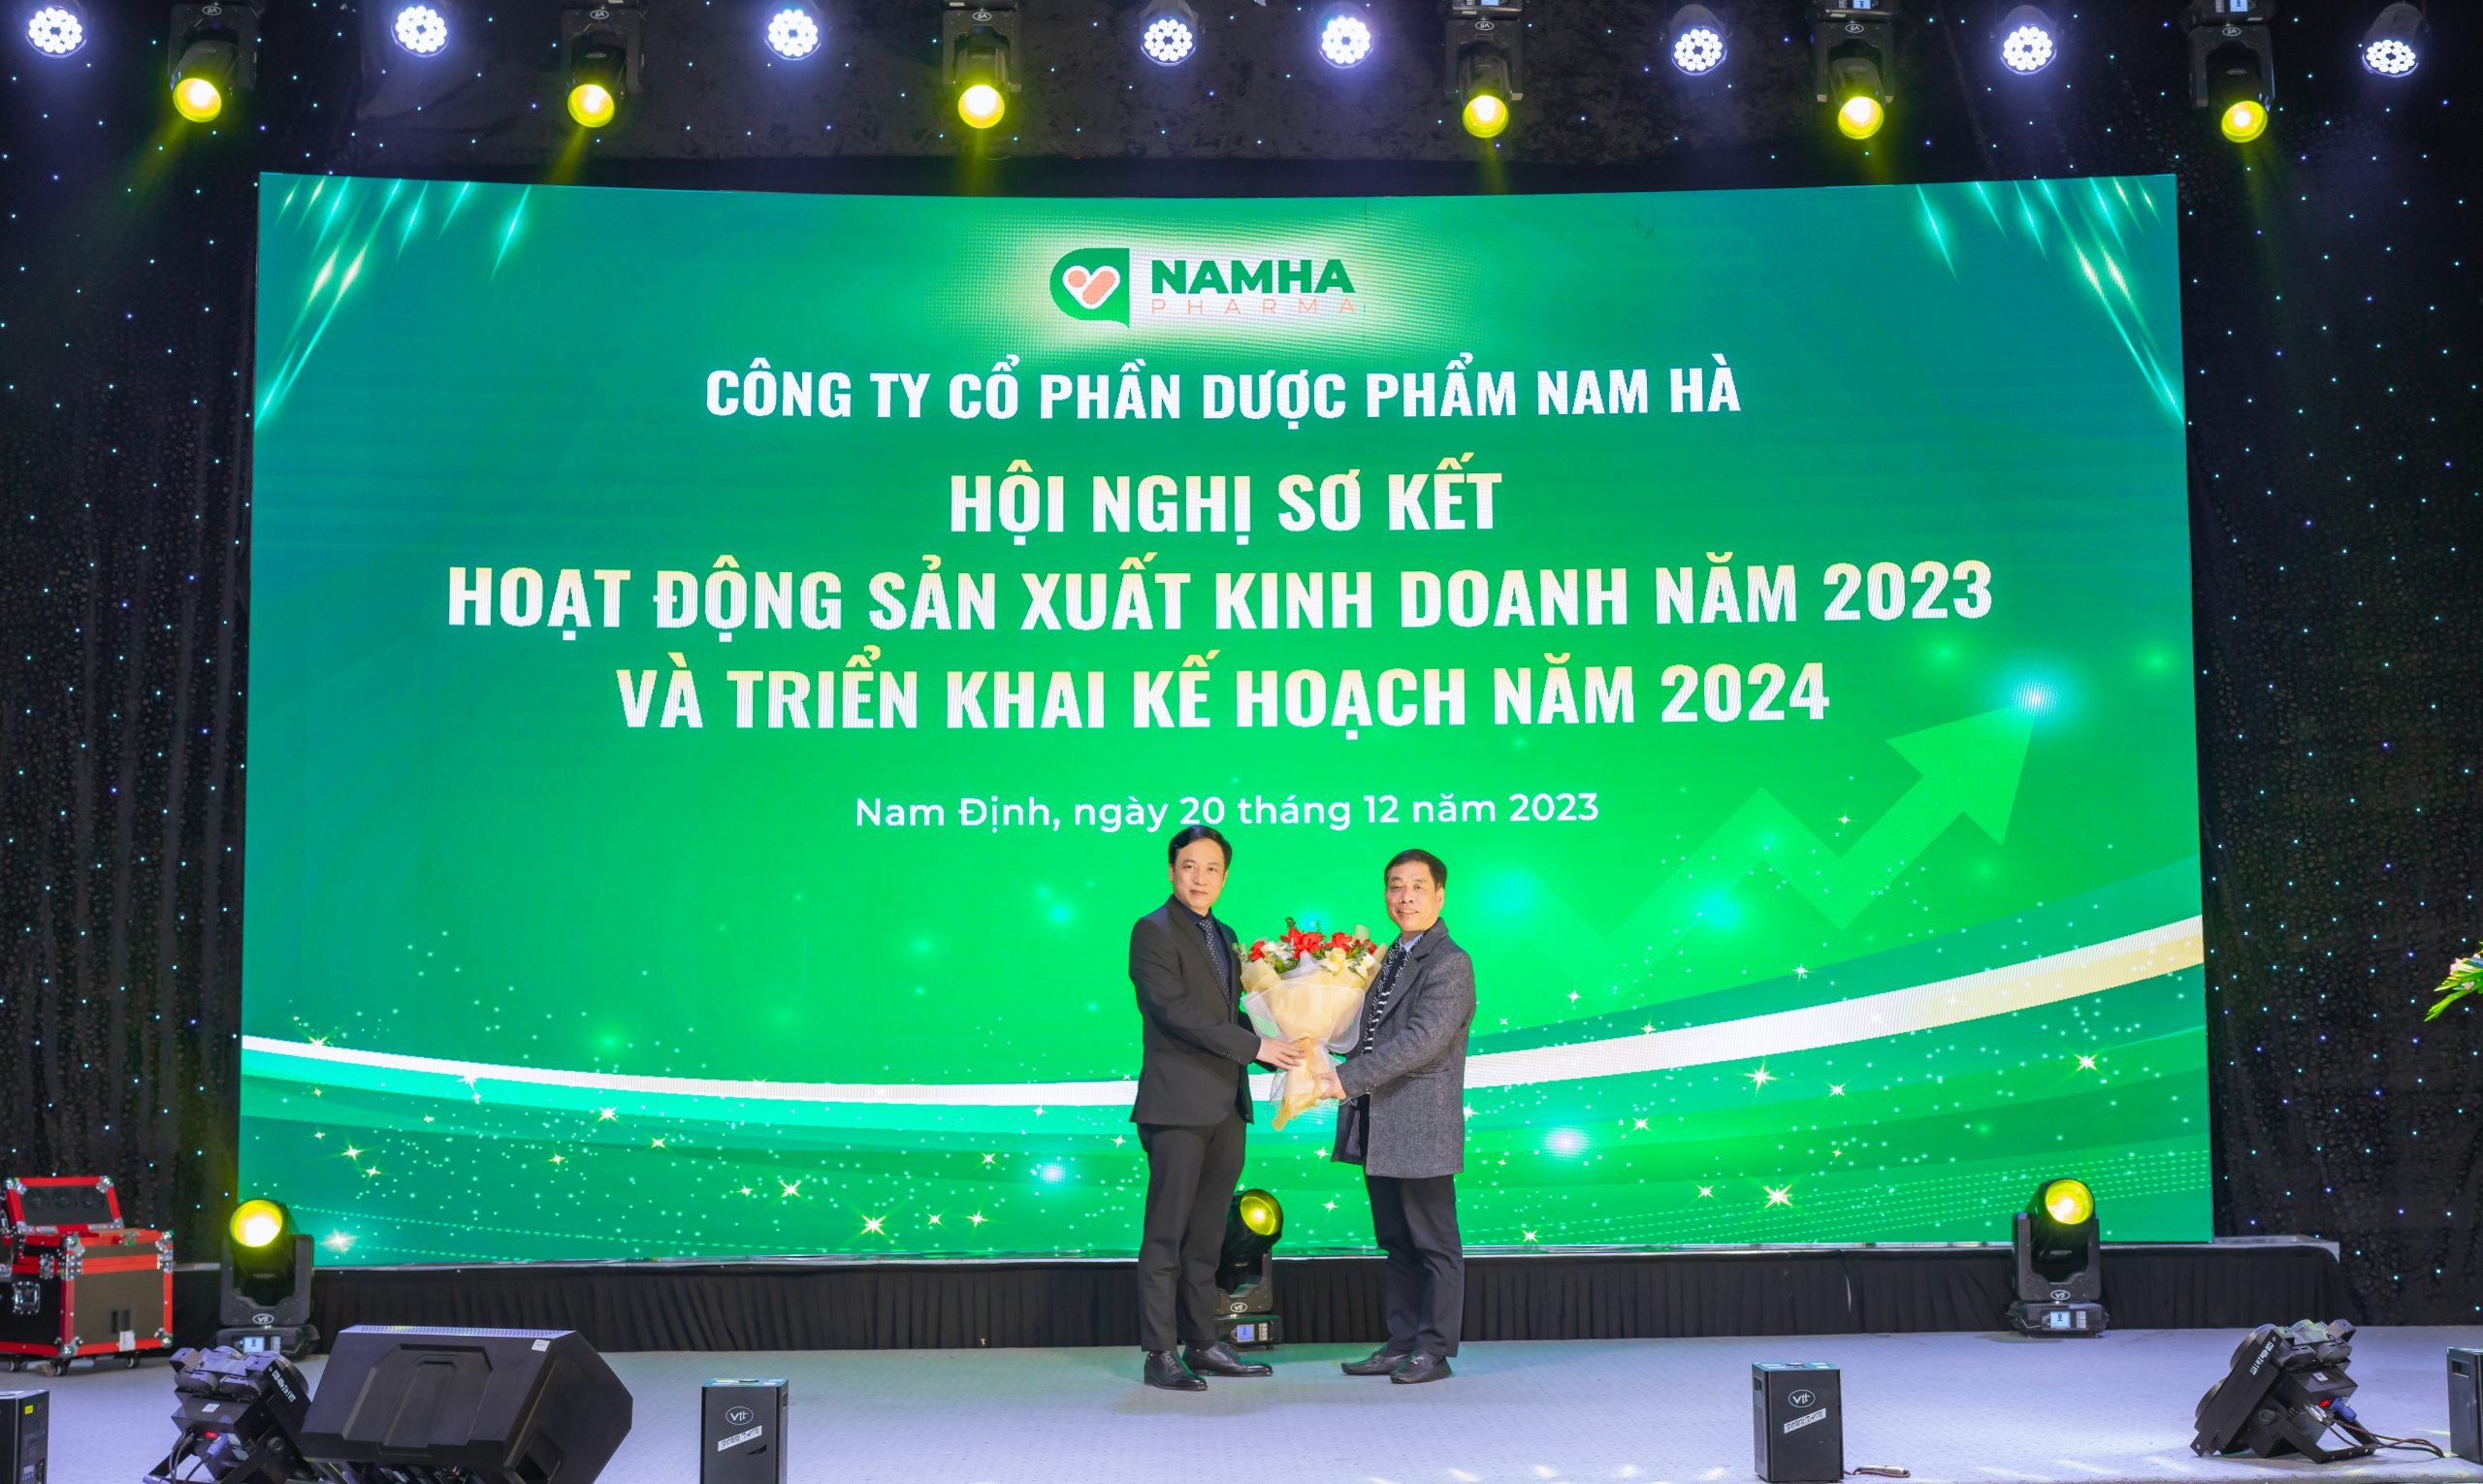 Dược Nam Hà tổ chức thành công Hội nghị sơ kết hoạt động sản xuất kinh doanh năm 2023 và triển khai kế hoạch năm 2024